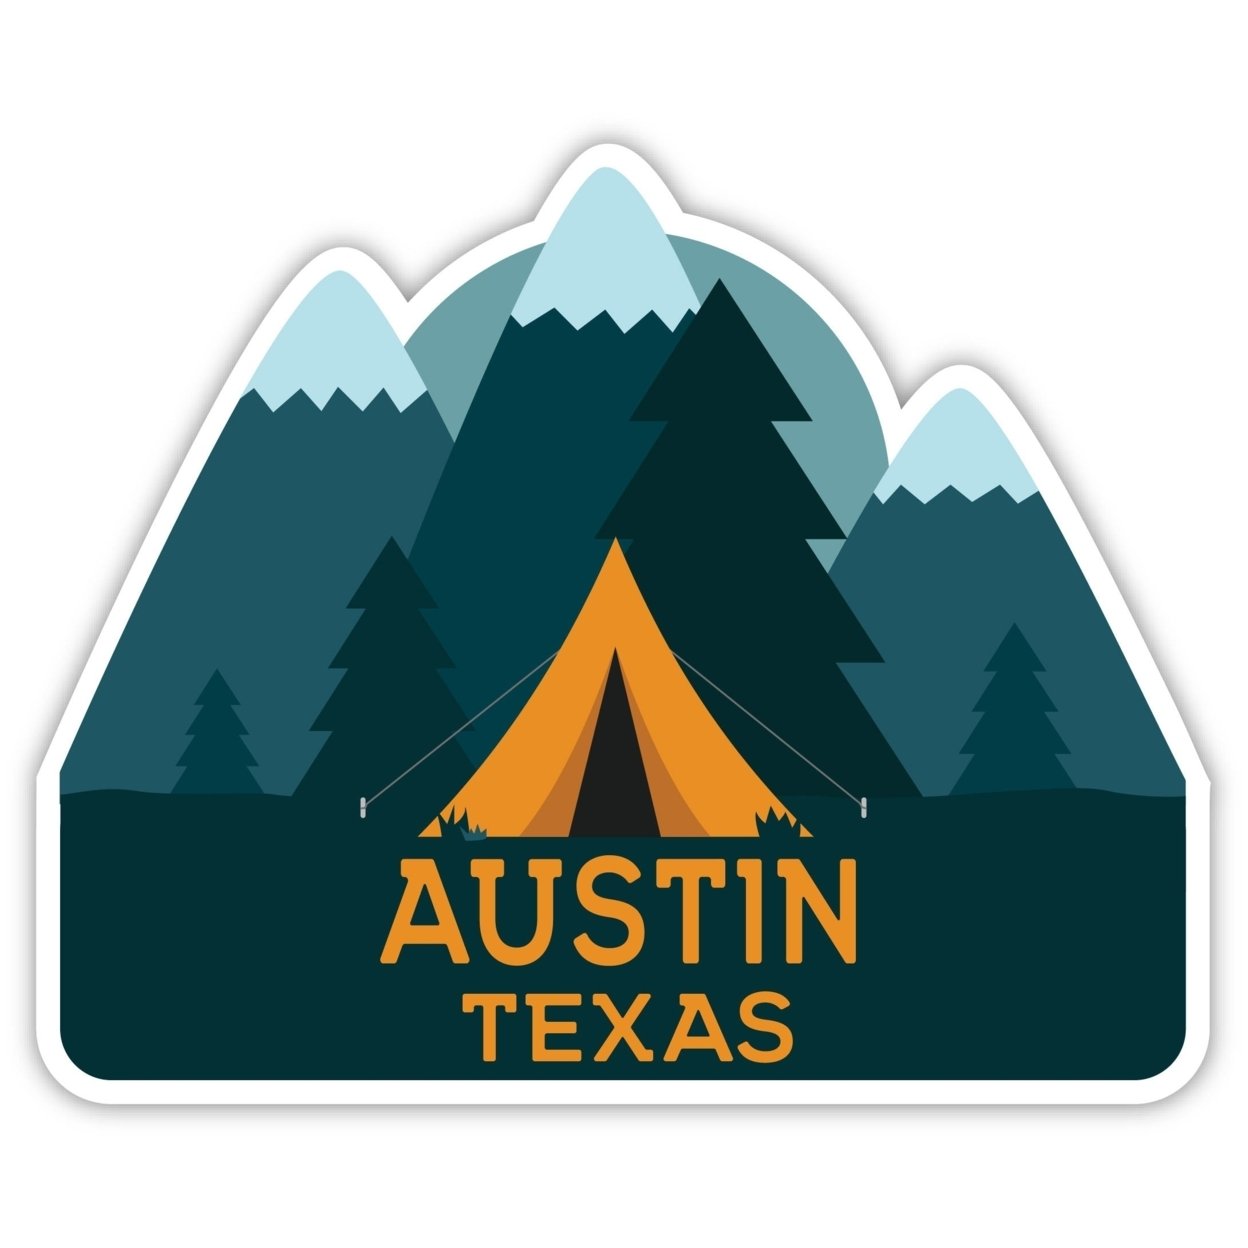 Austin Texas Souvenir Decorative Stickers (Choose Theme And Size) - Single Unit, 8-Inch, Tent